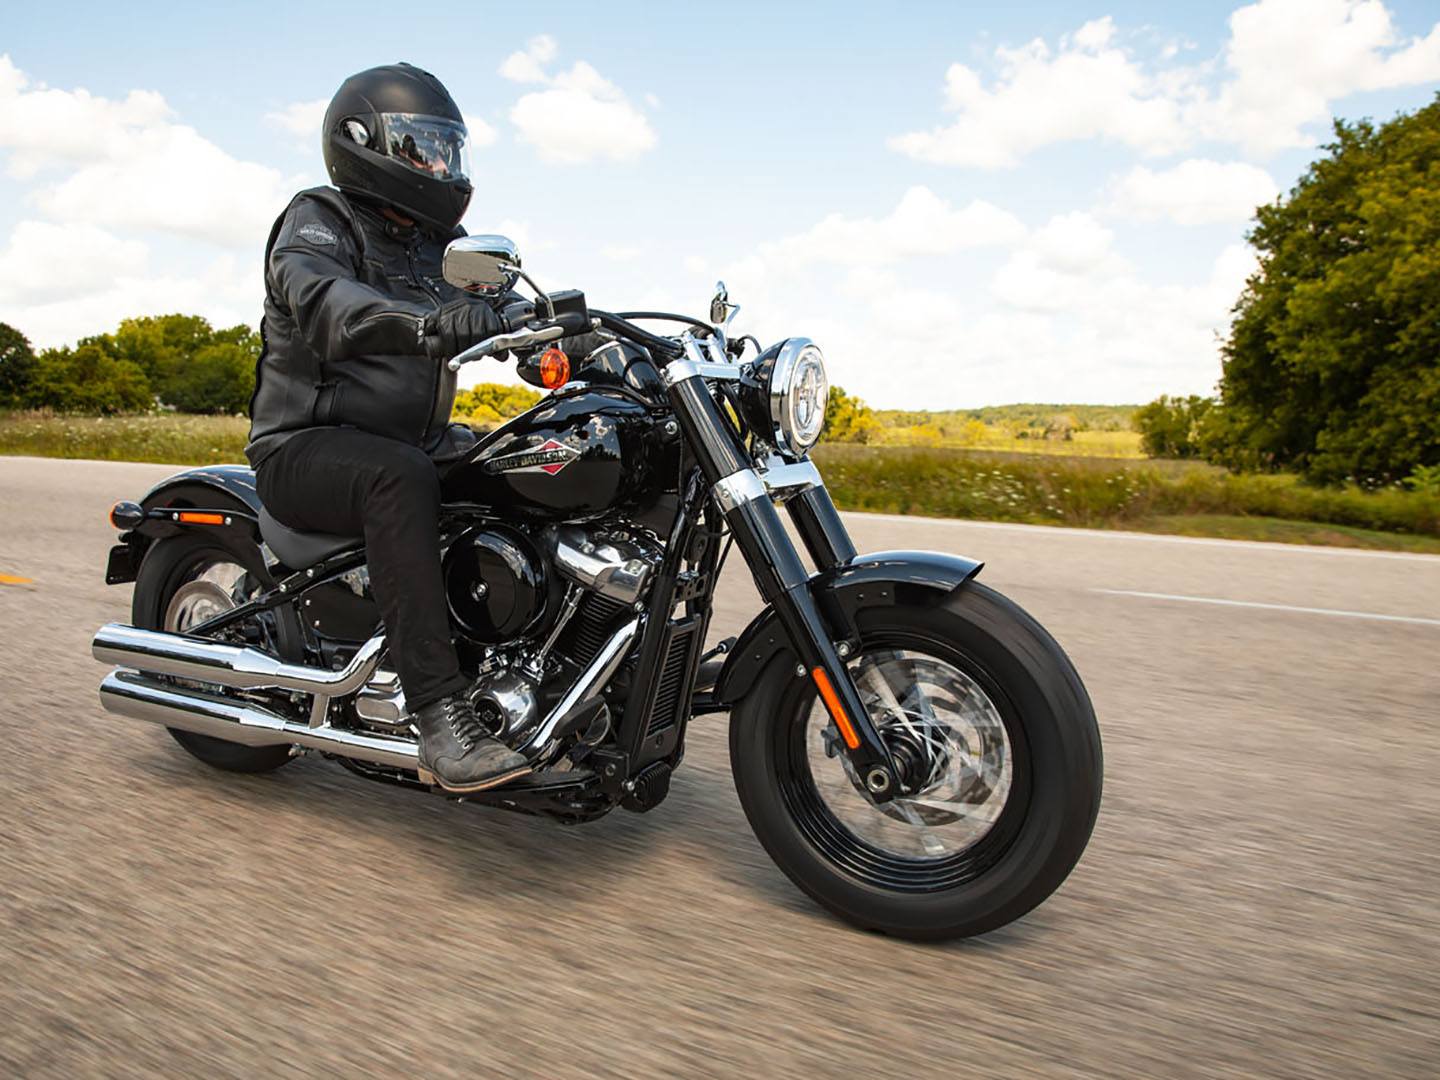 2021 Harley-Davidson Softail Slim® in Sandy, Utah - Photo 14